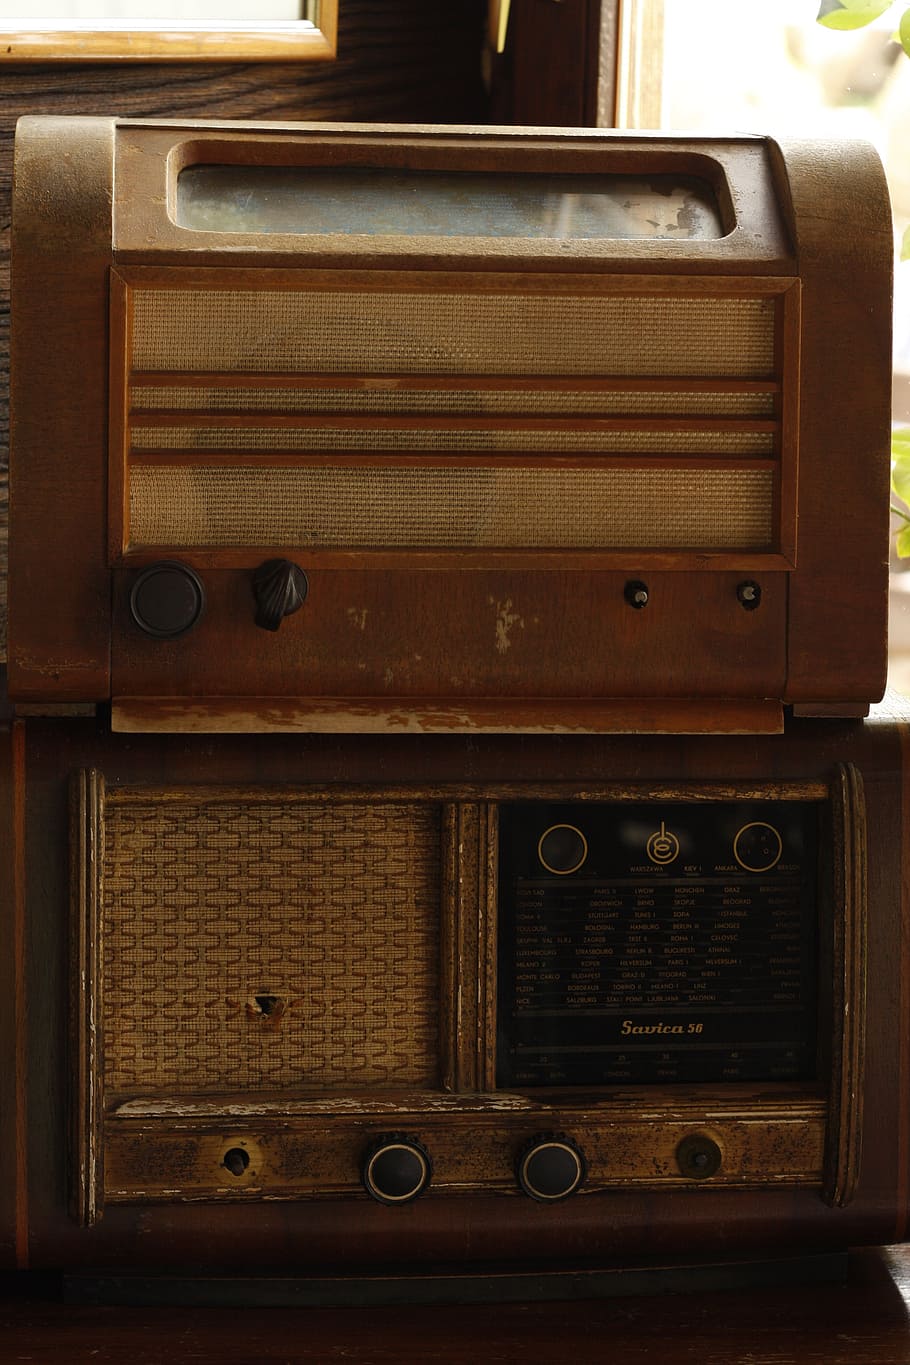 ヴィンテージ, ラジオ, 古い, レトロ, 機器, オーディオ, 音楽, 昔ながらの, アンティーク, 木製